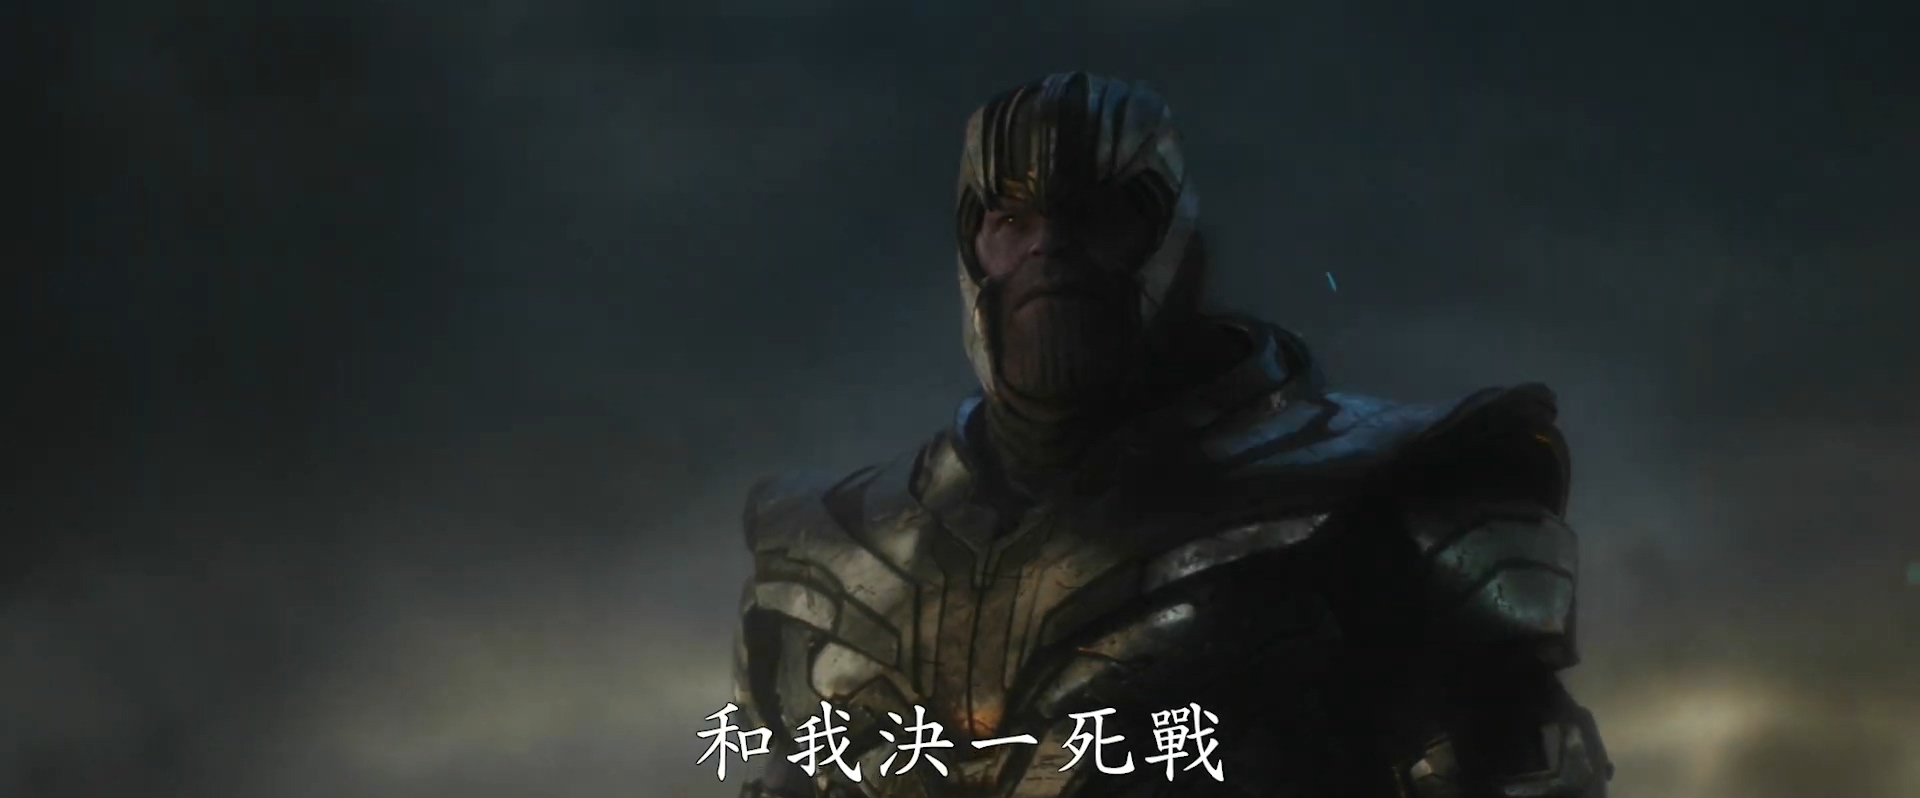 《复仇者联盟4》全新中文版预告 大Boss灭霸再次现身